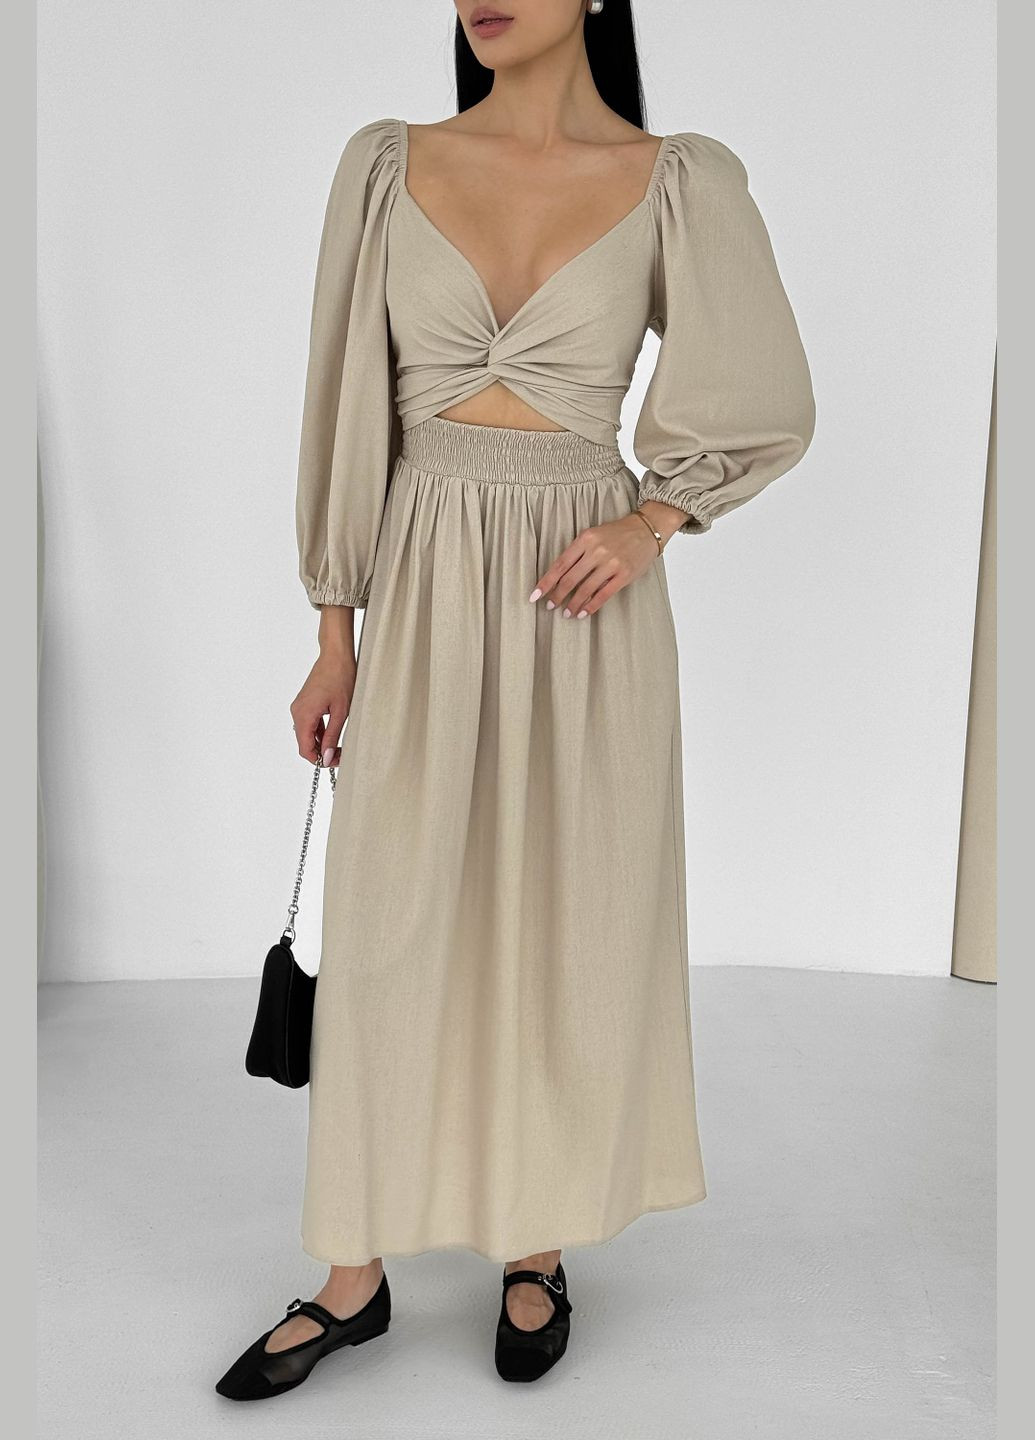 Бежевое праздничный, вечернее дизайнерское платье из льна бежевого цвета платье-трансформер Jadone Fashion однотонное